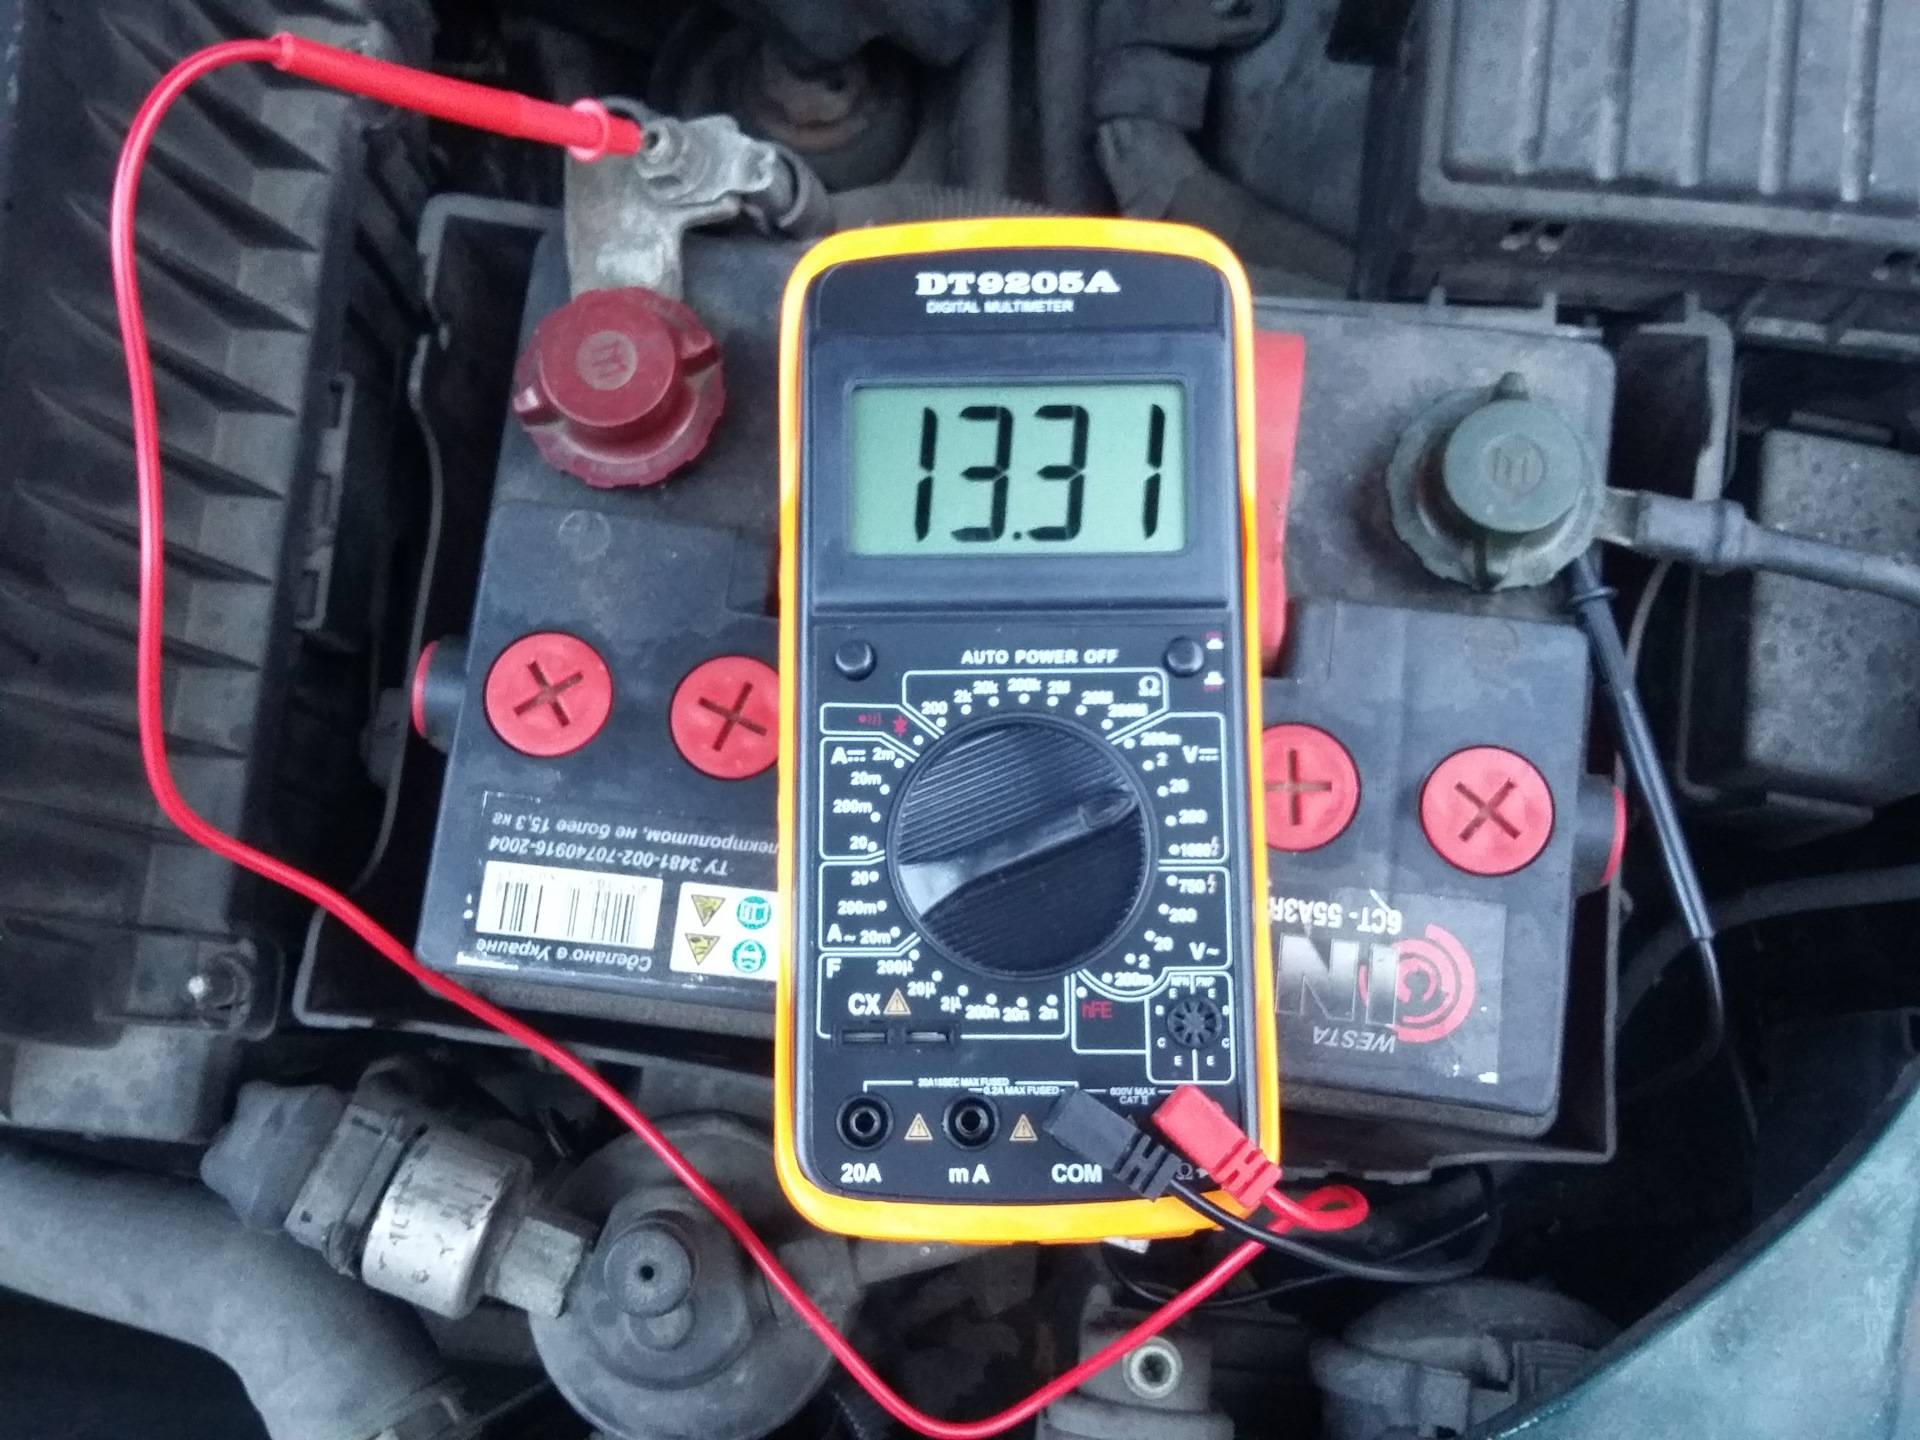 Проверить утечку тока на ваз. Замерить ток утечки аккумулятора автомобиля. Проверить утечку тока на автомобиле мультиметром. Мерседес w211 утечка тока 2 Ампера. Как измерить утечку аккумулятора мультиметром.